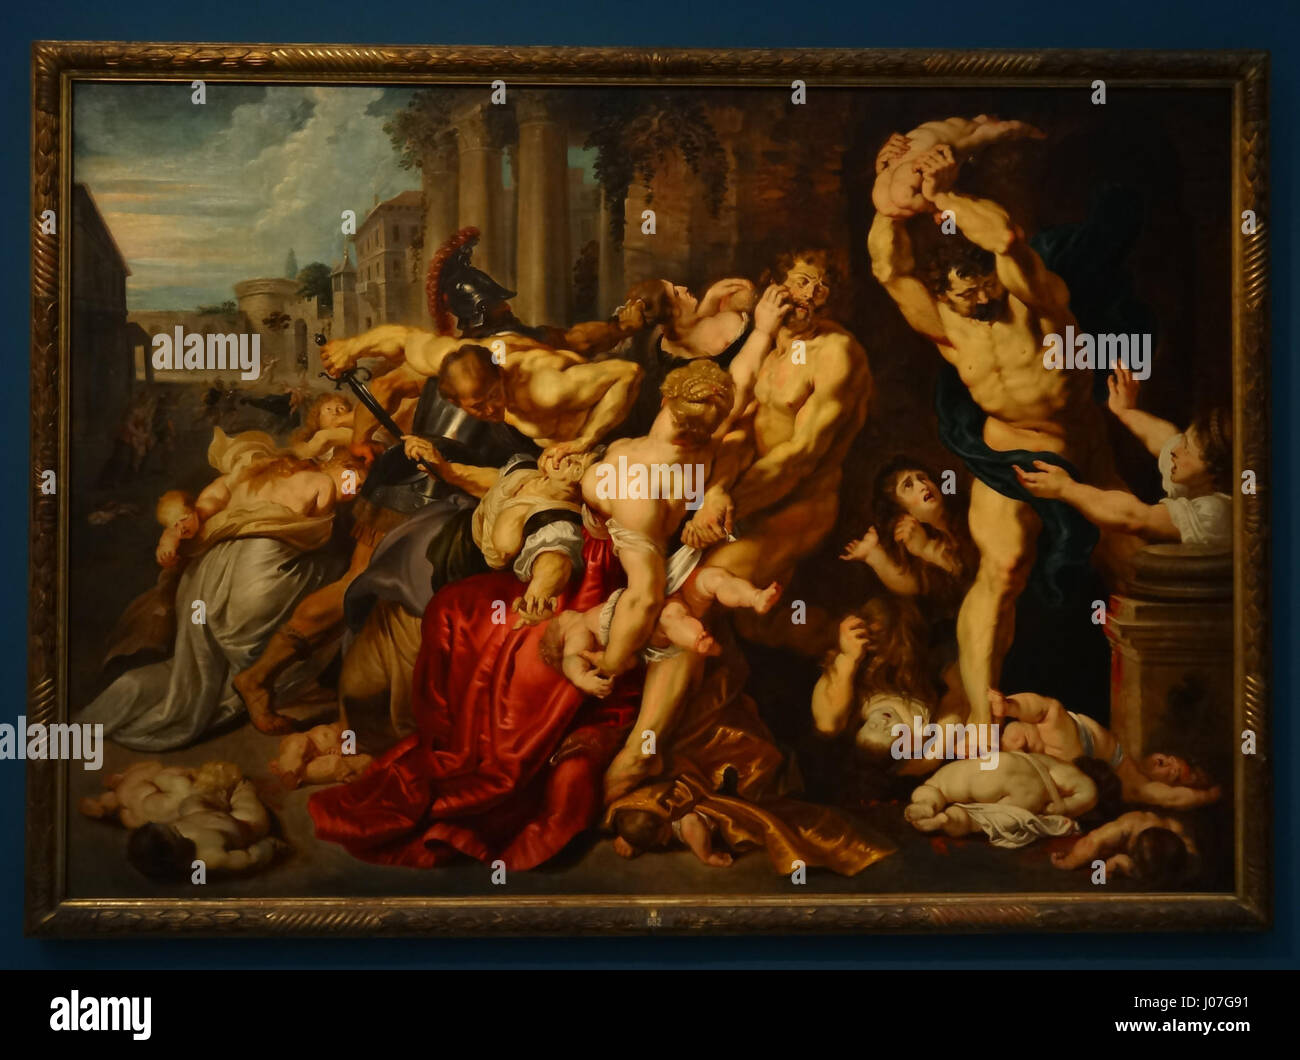 Rubens workshop - Le Massacre des Innocents - Musées royaux des beaux-arts de Belgique Stock Photo